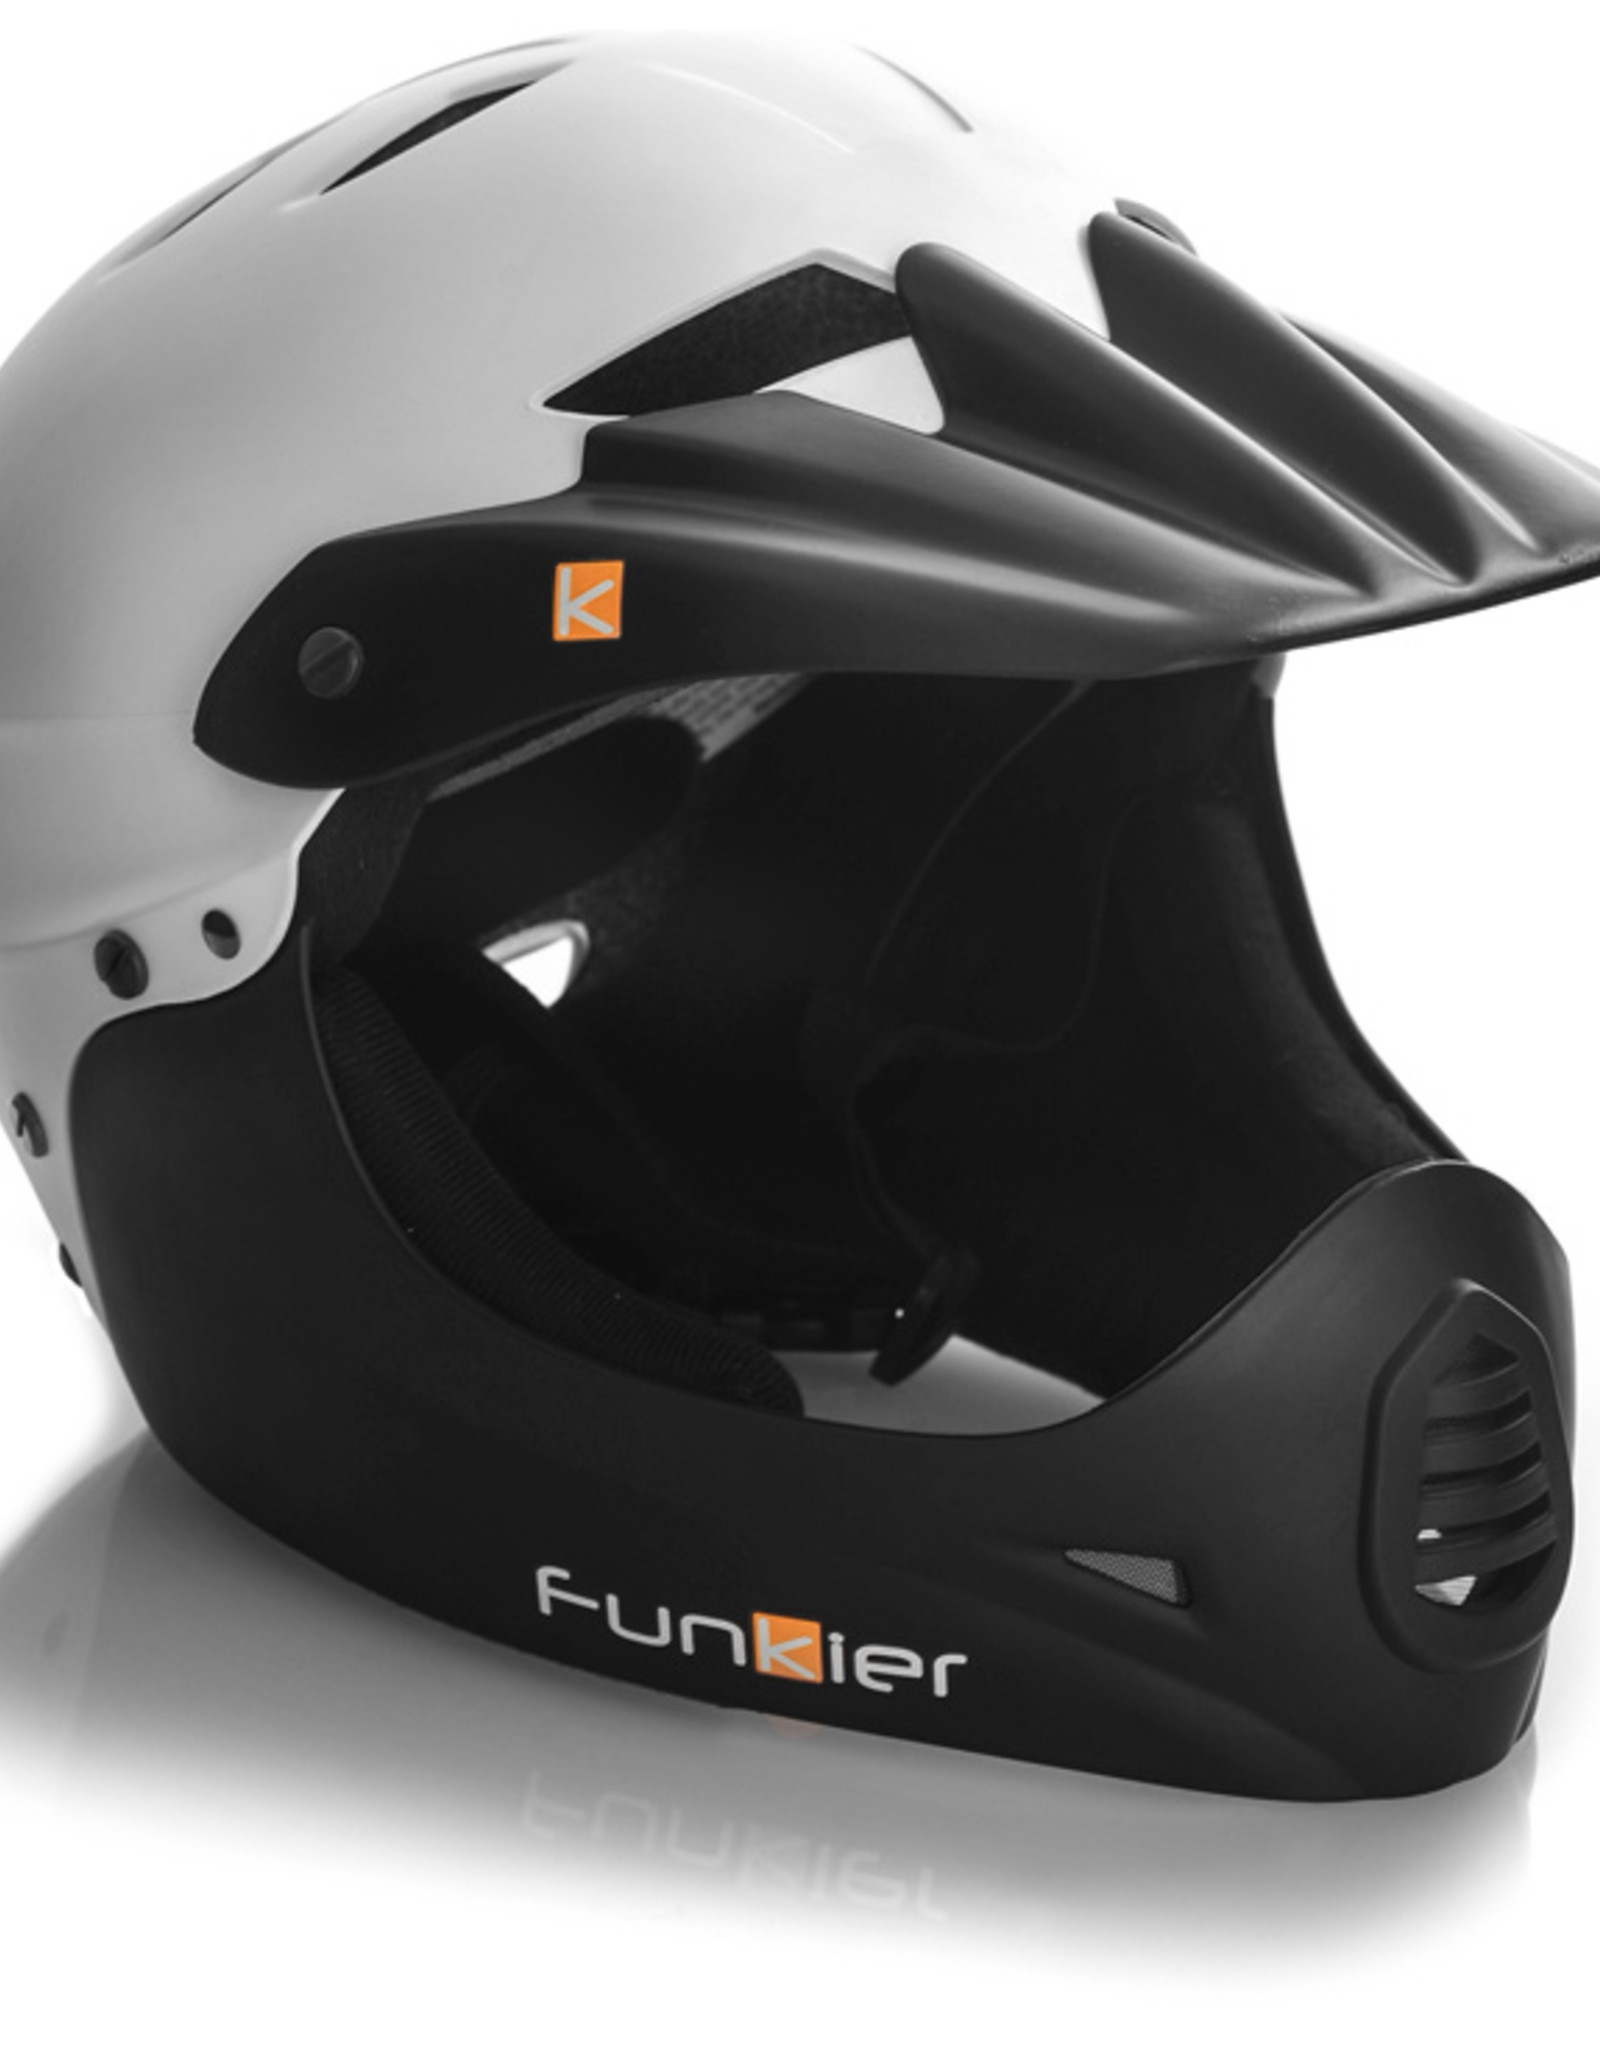 Funkier Sirius Downhill Full Face Helmet in White/Black